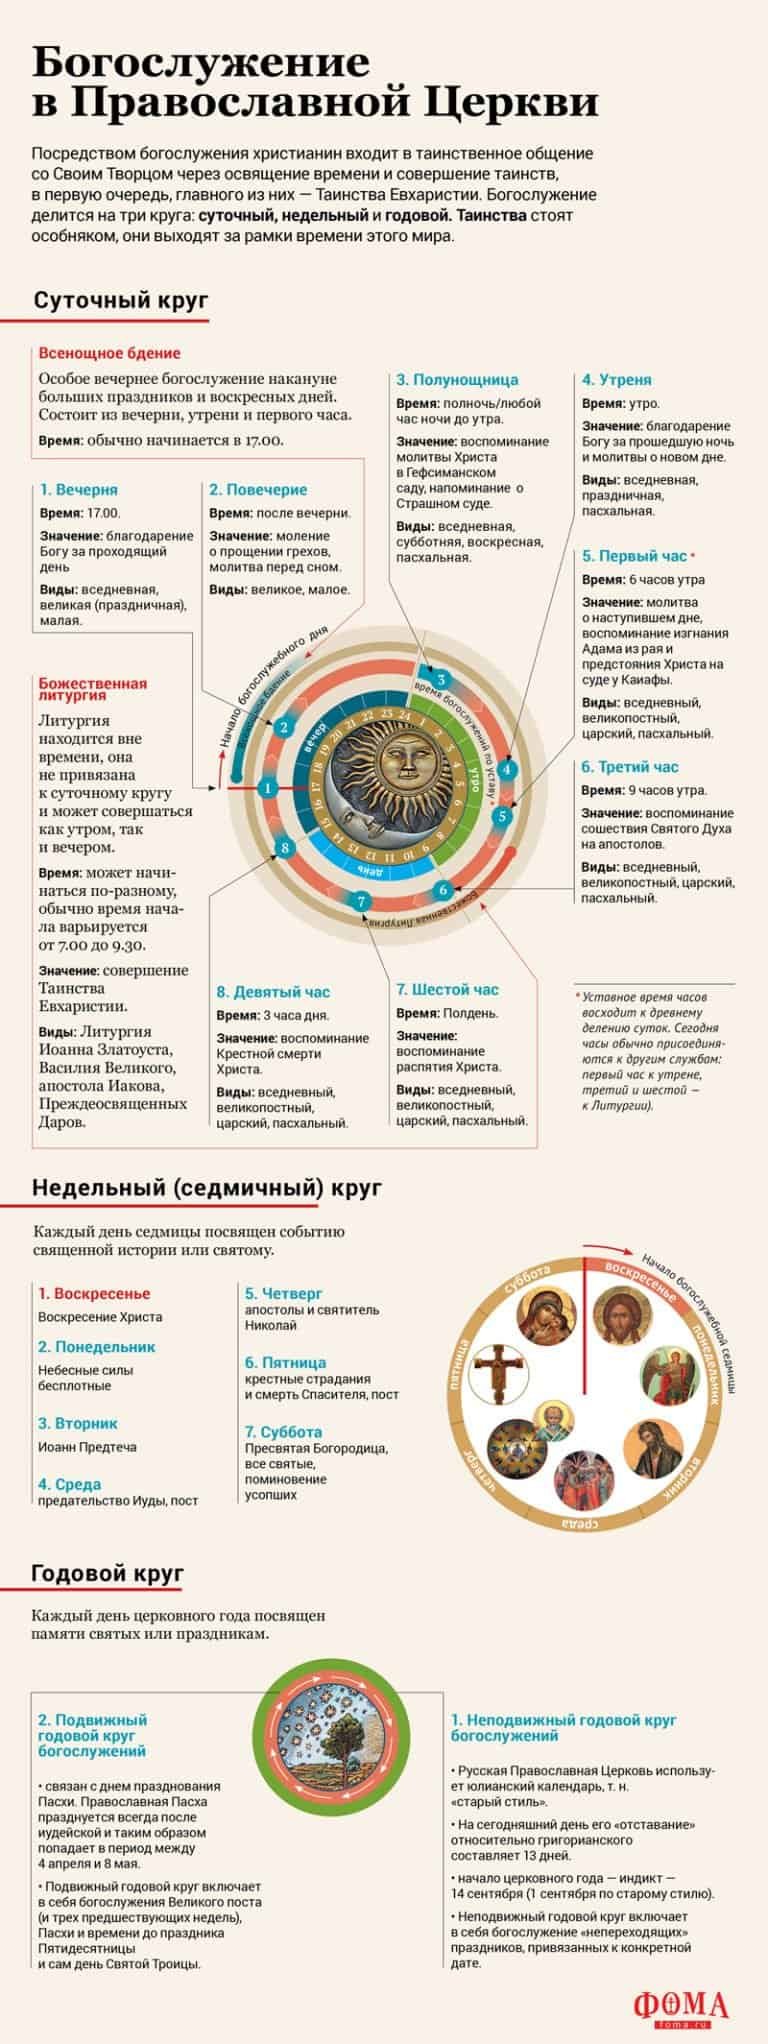 Круги богослужения в православной церкви